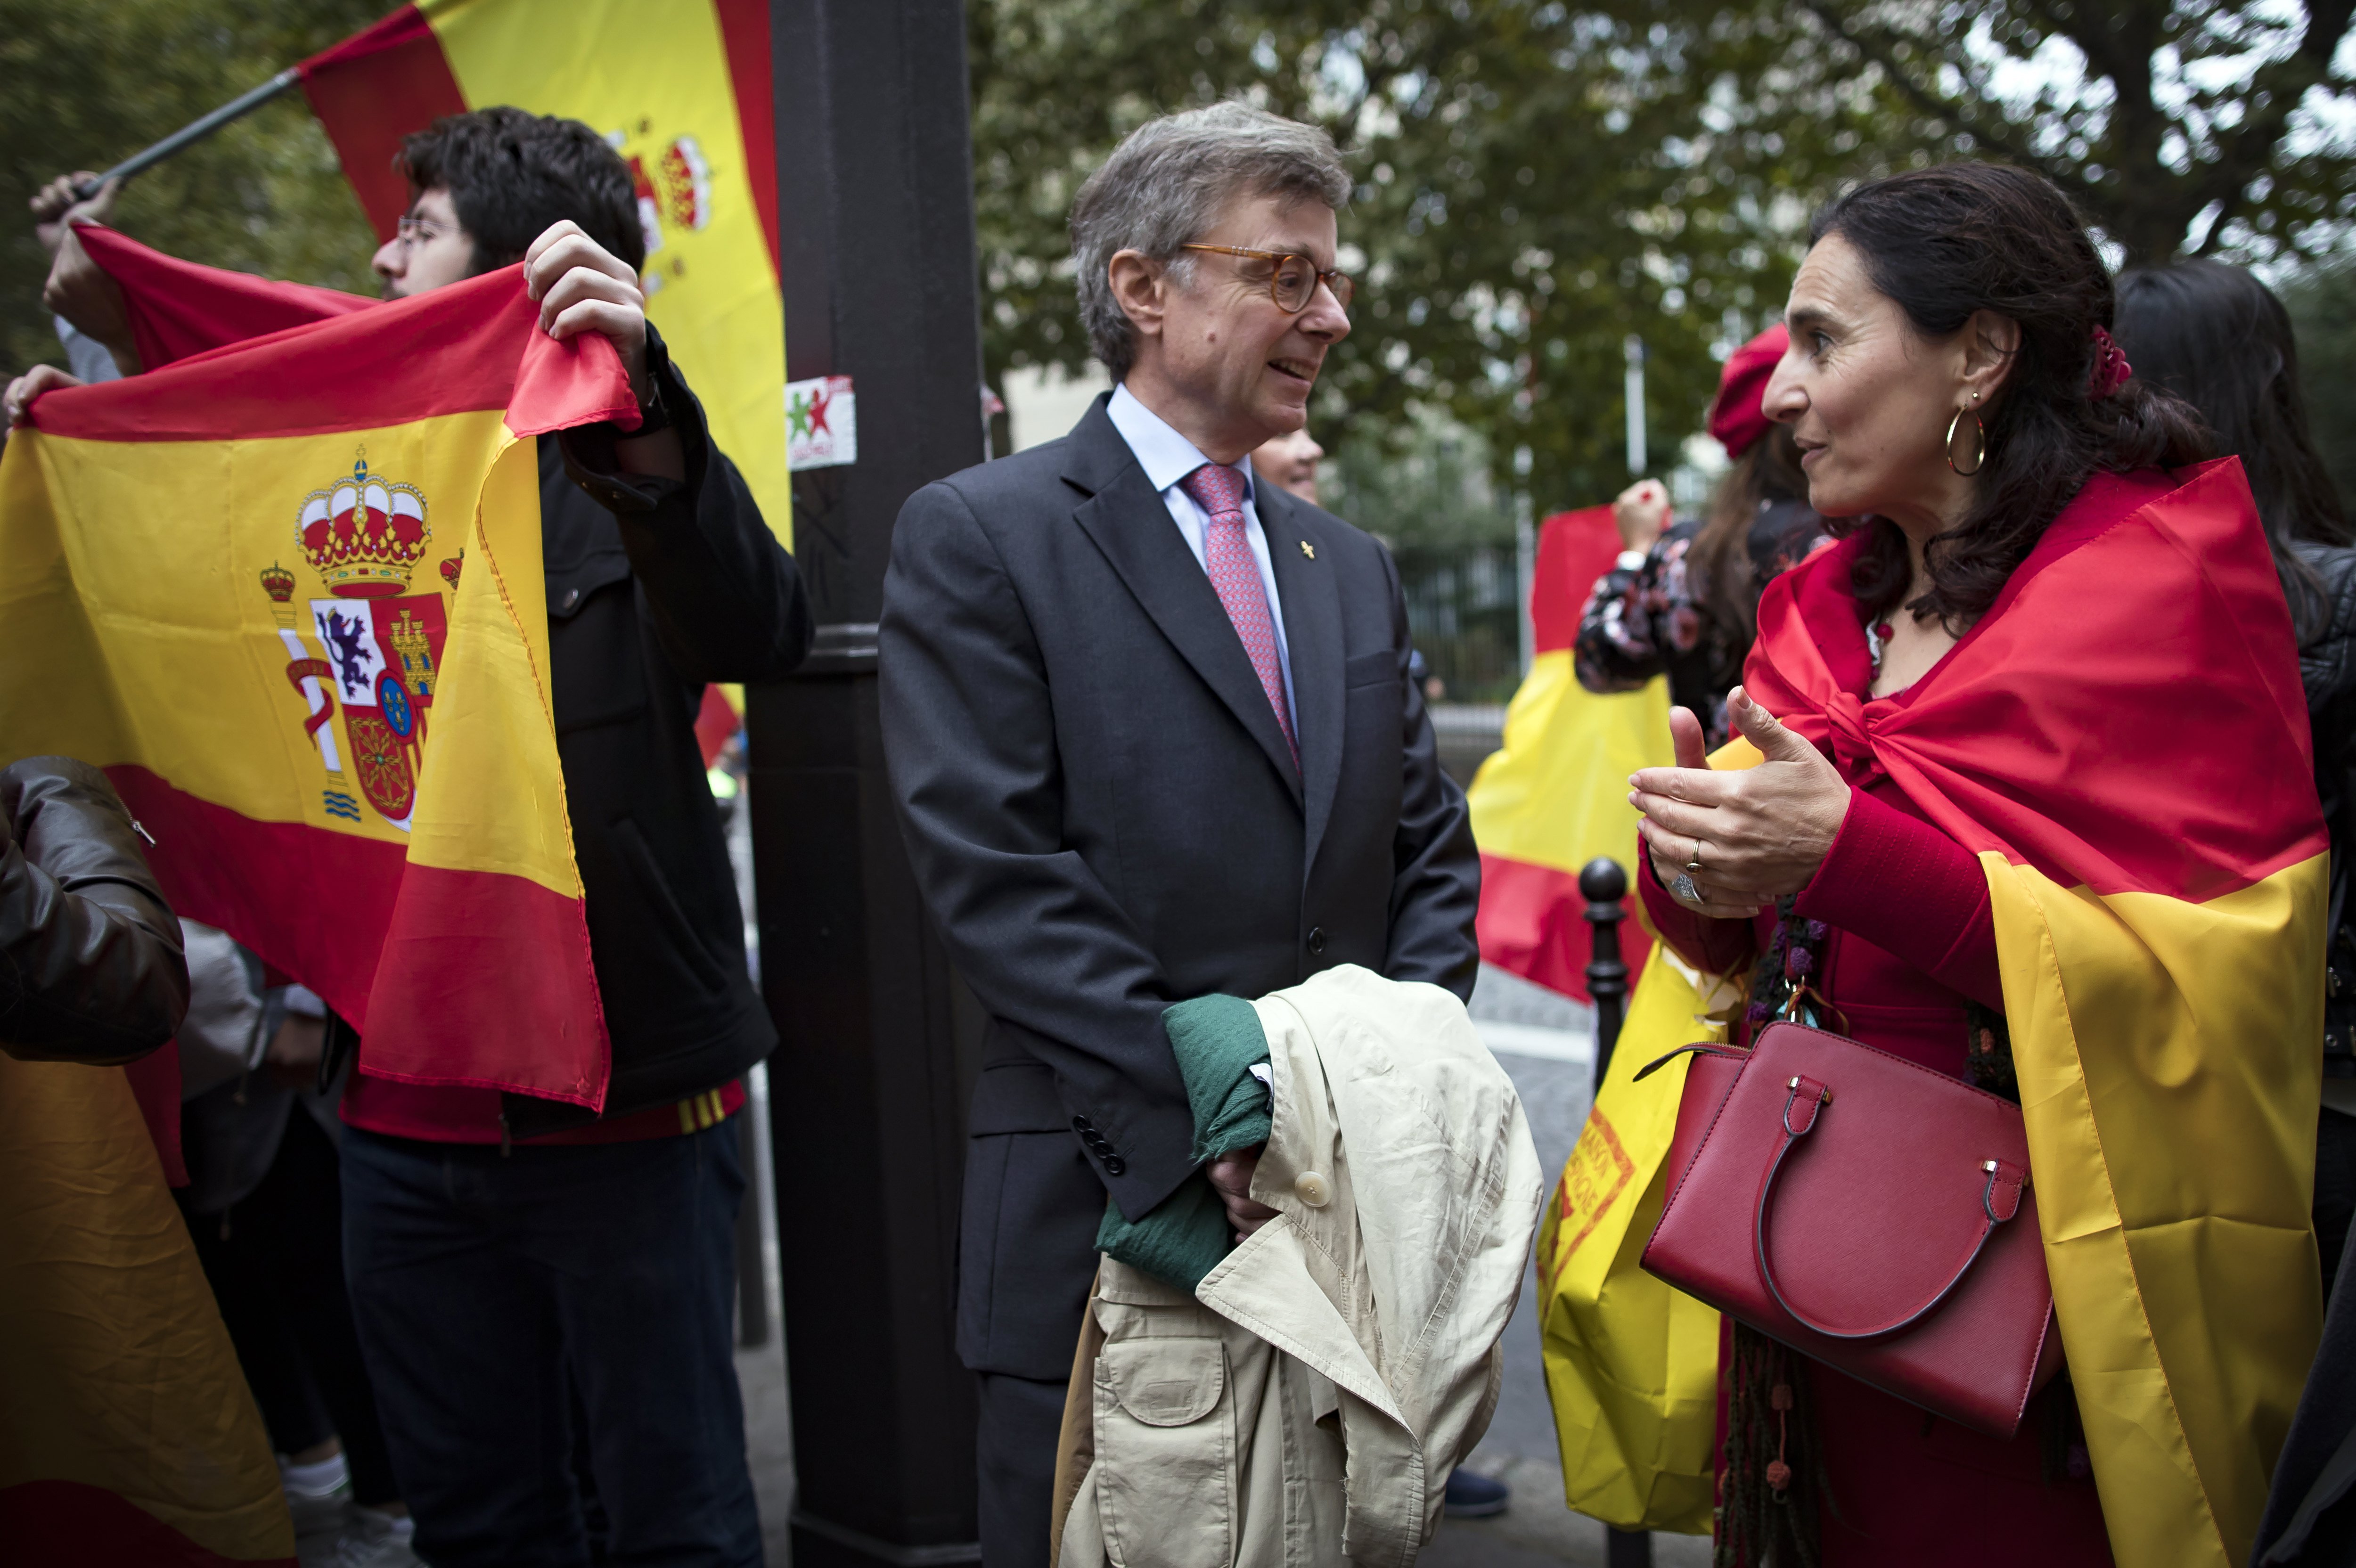 L'ambaixador espanyol sua tinta a la TV francesa (pels llaços grocs)